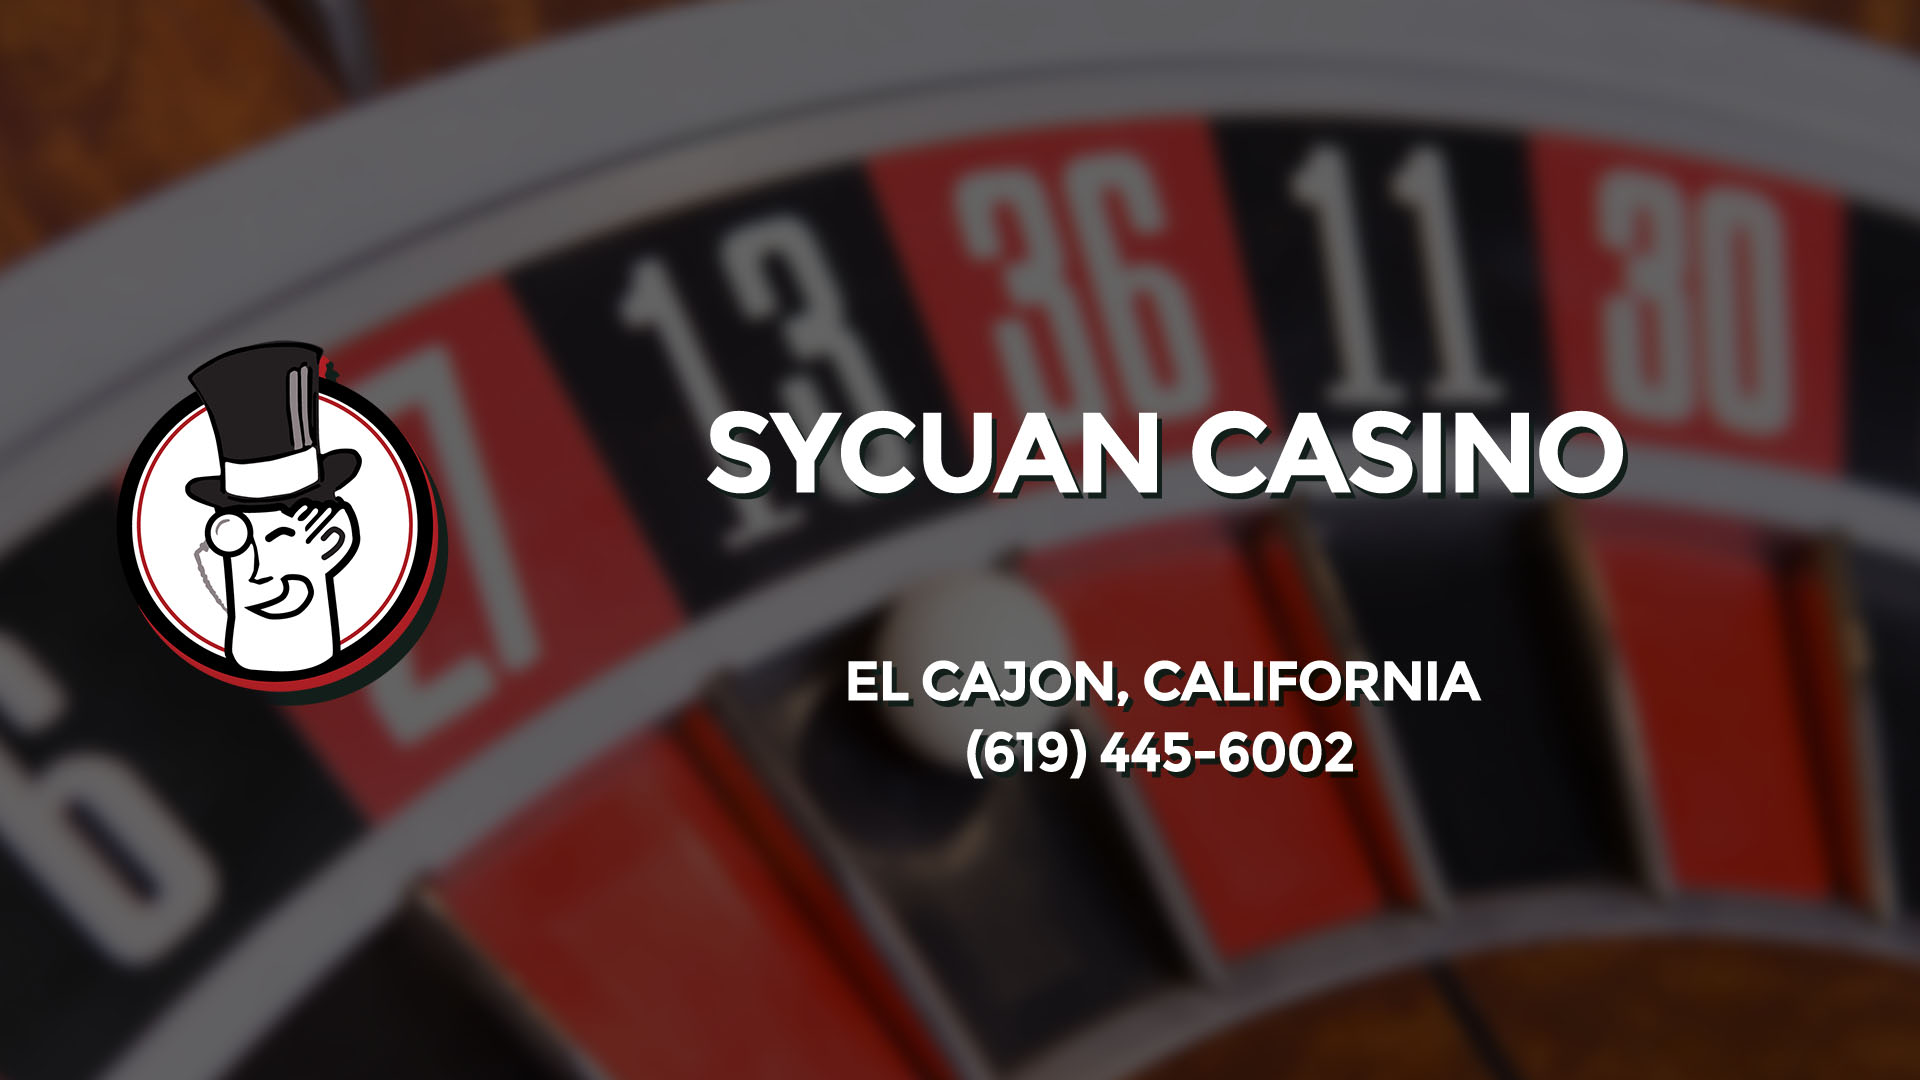 sycuan casino bus schedule el cajon